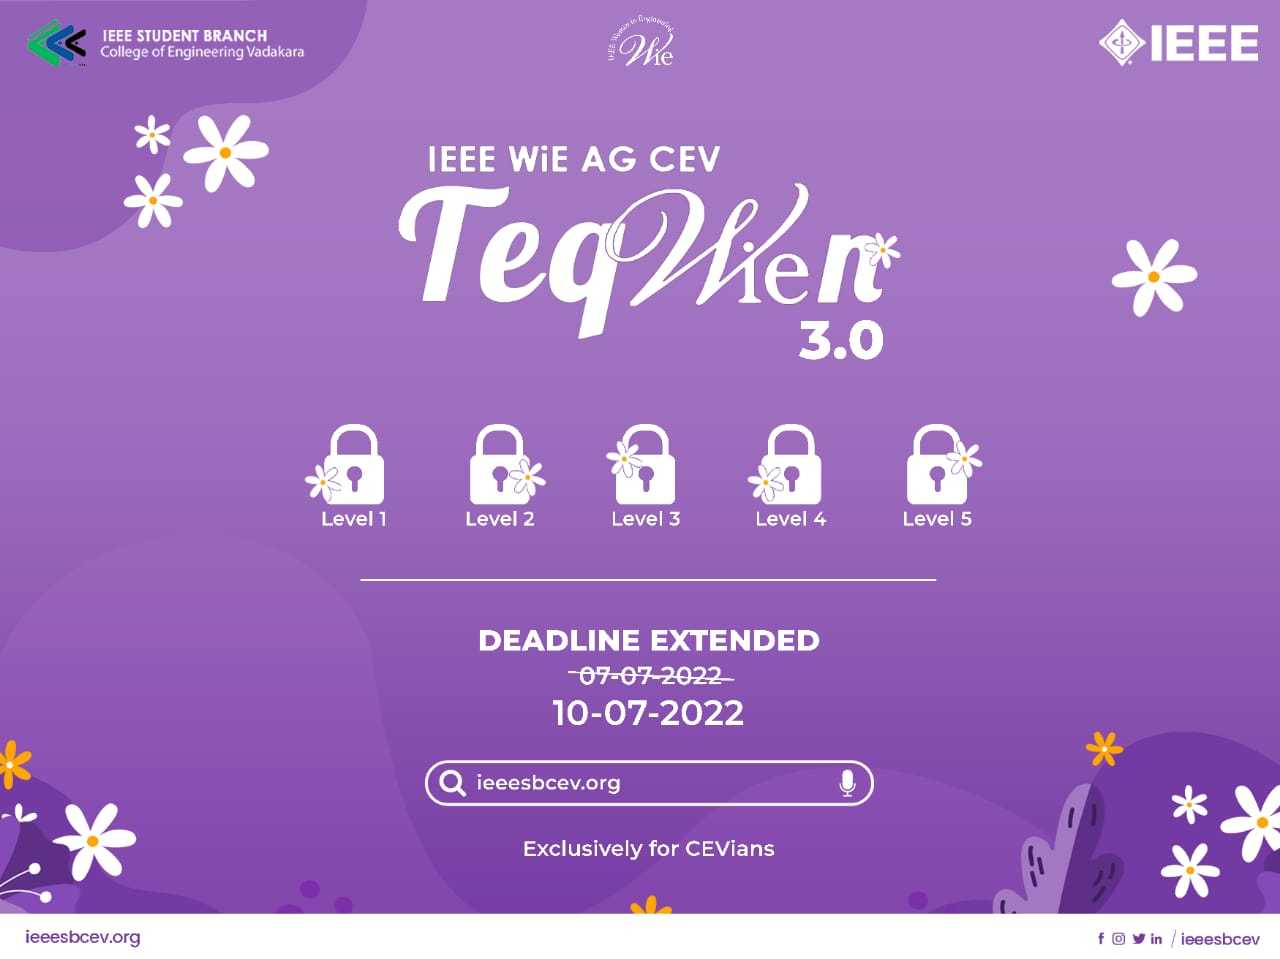 TeqWiEn 3.0 Deadline Extended